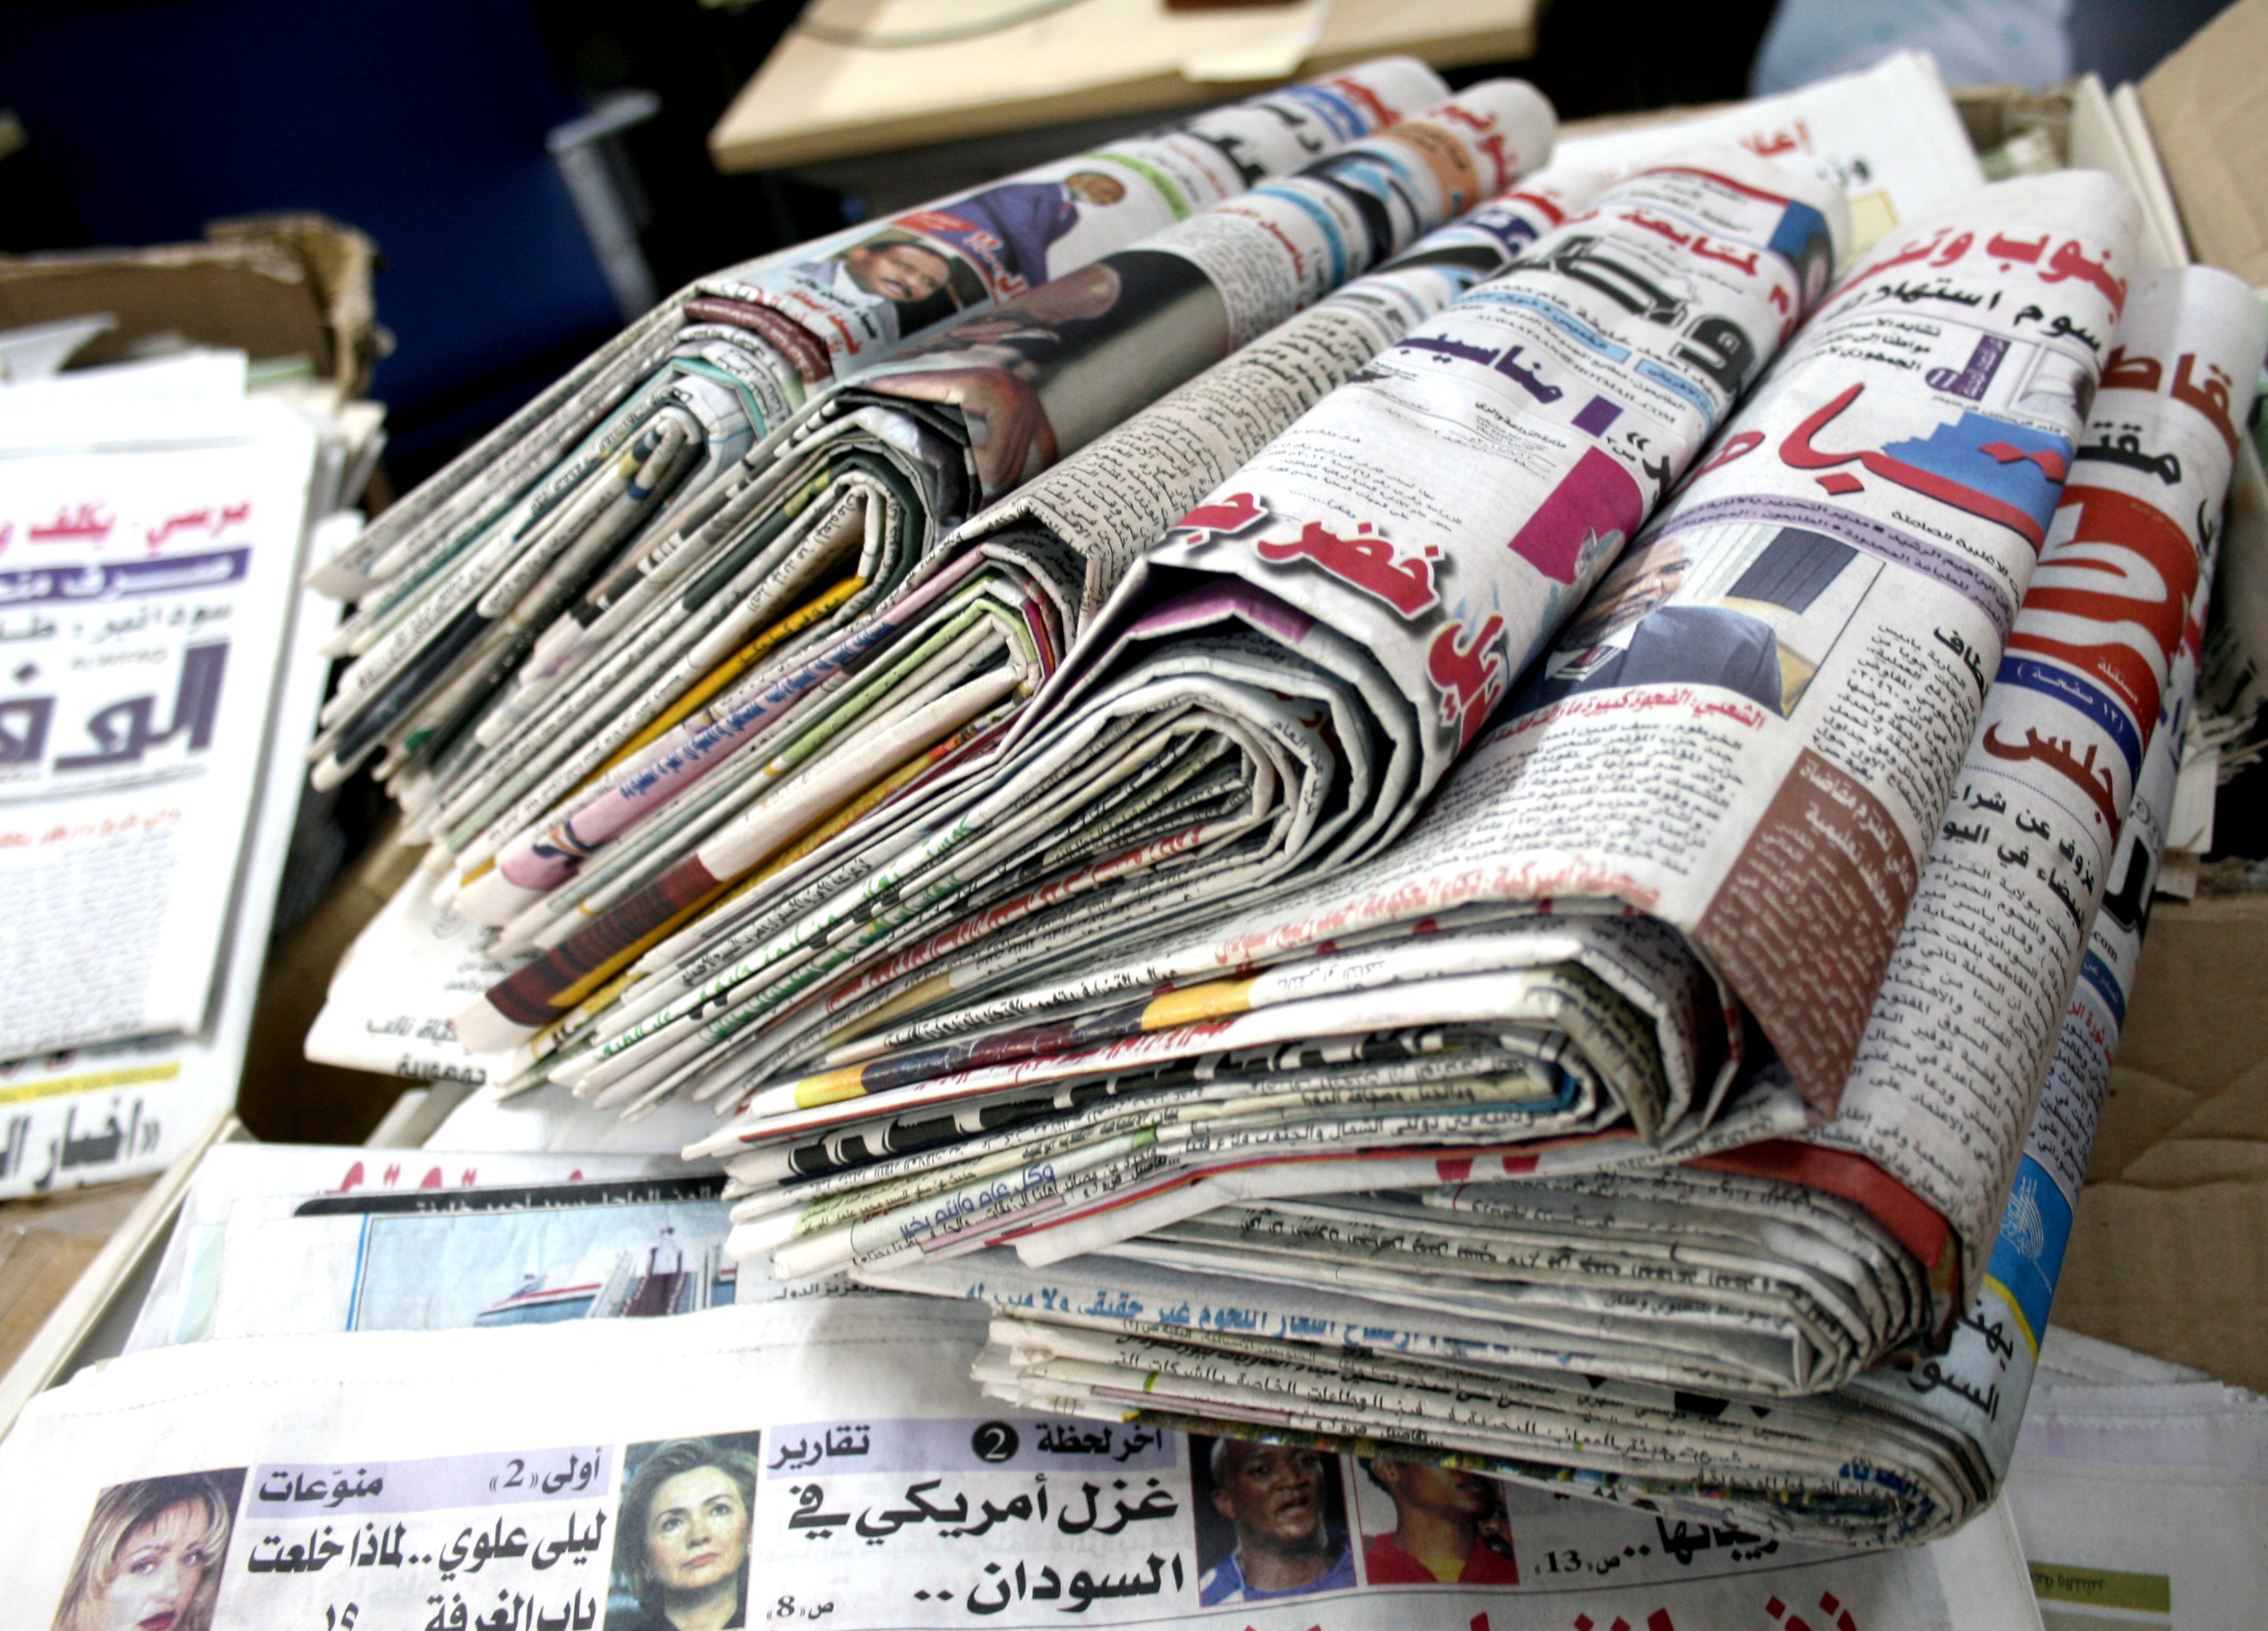 أبرز ما تناولته الصحف العربية من عناوين لليوم الخميس